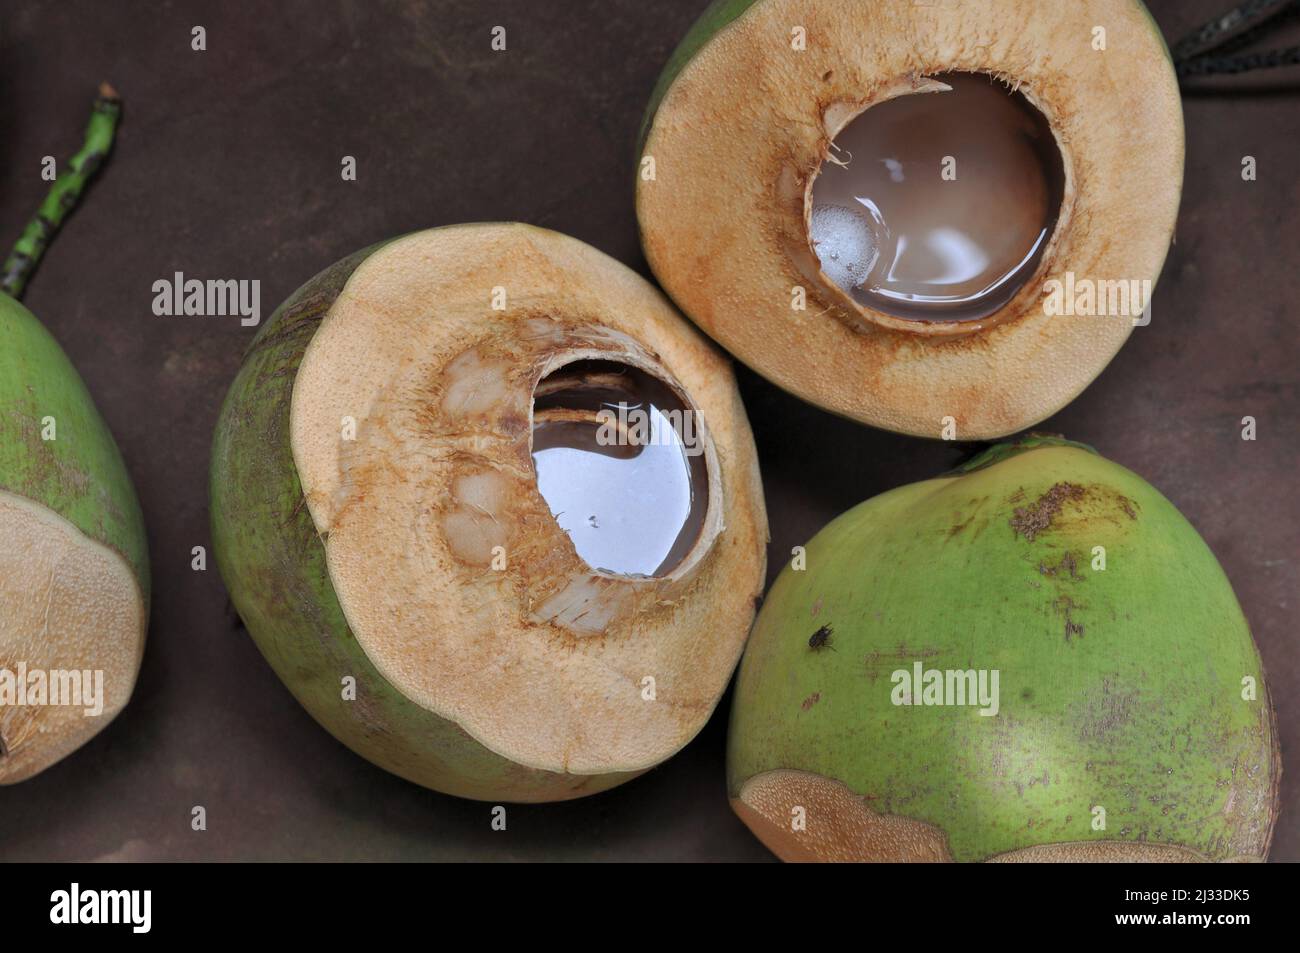 Noix de coco, eau de noix de coco, groupe de noix de coco, savoureux fruits tropicaux, noix de coco à la mouche Banque D'Images